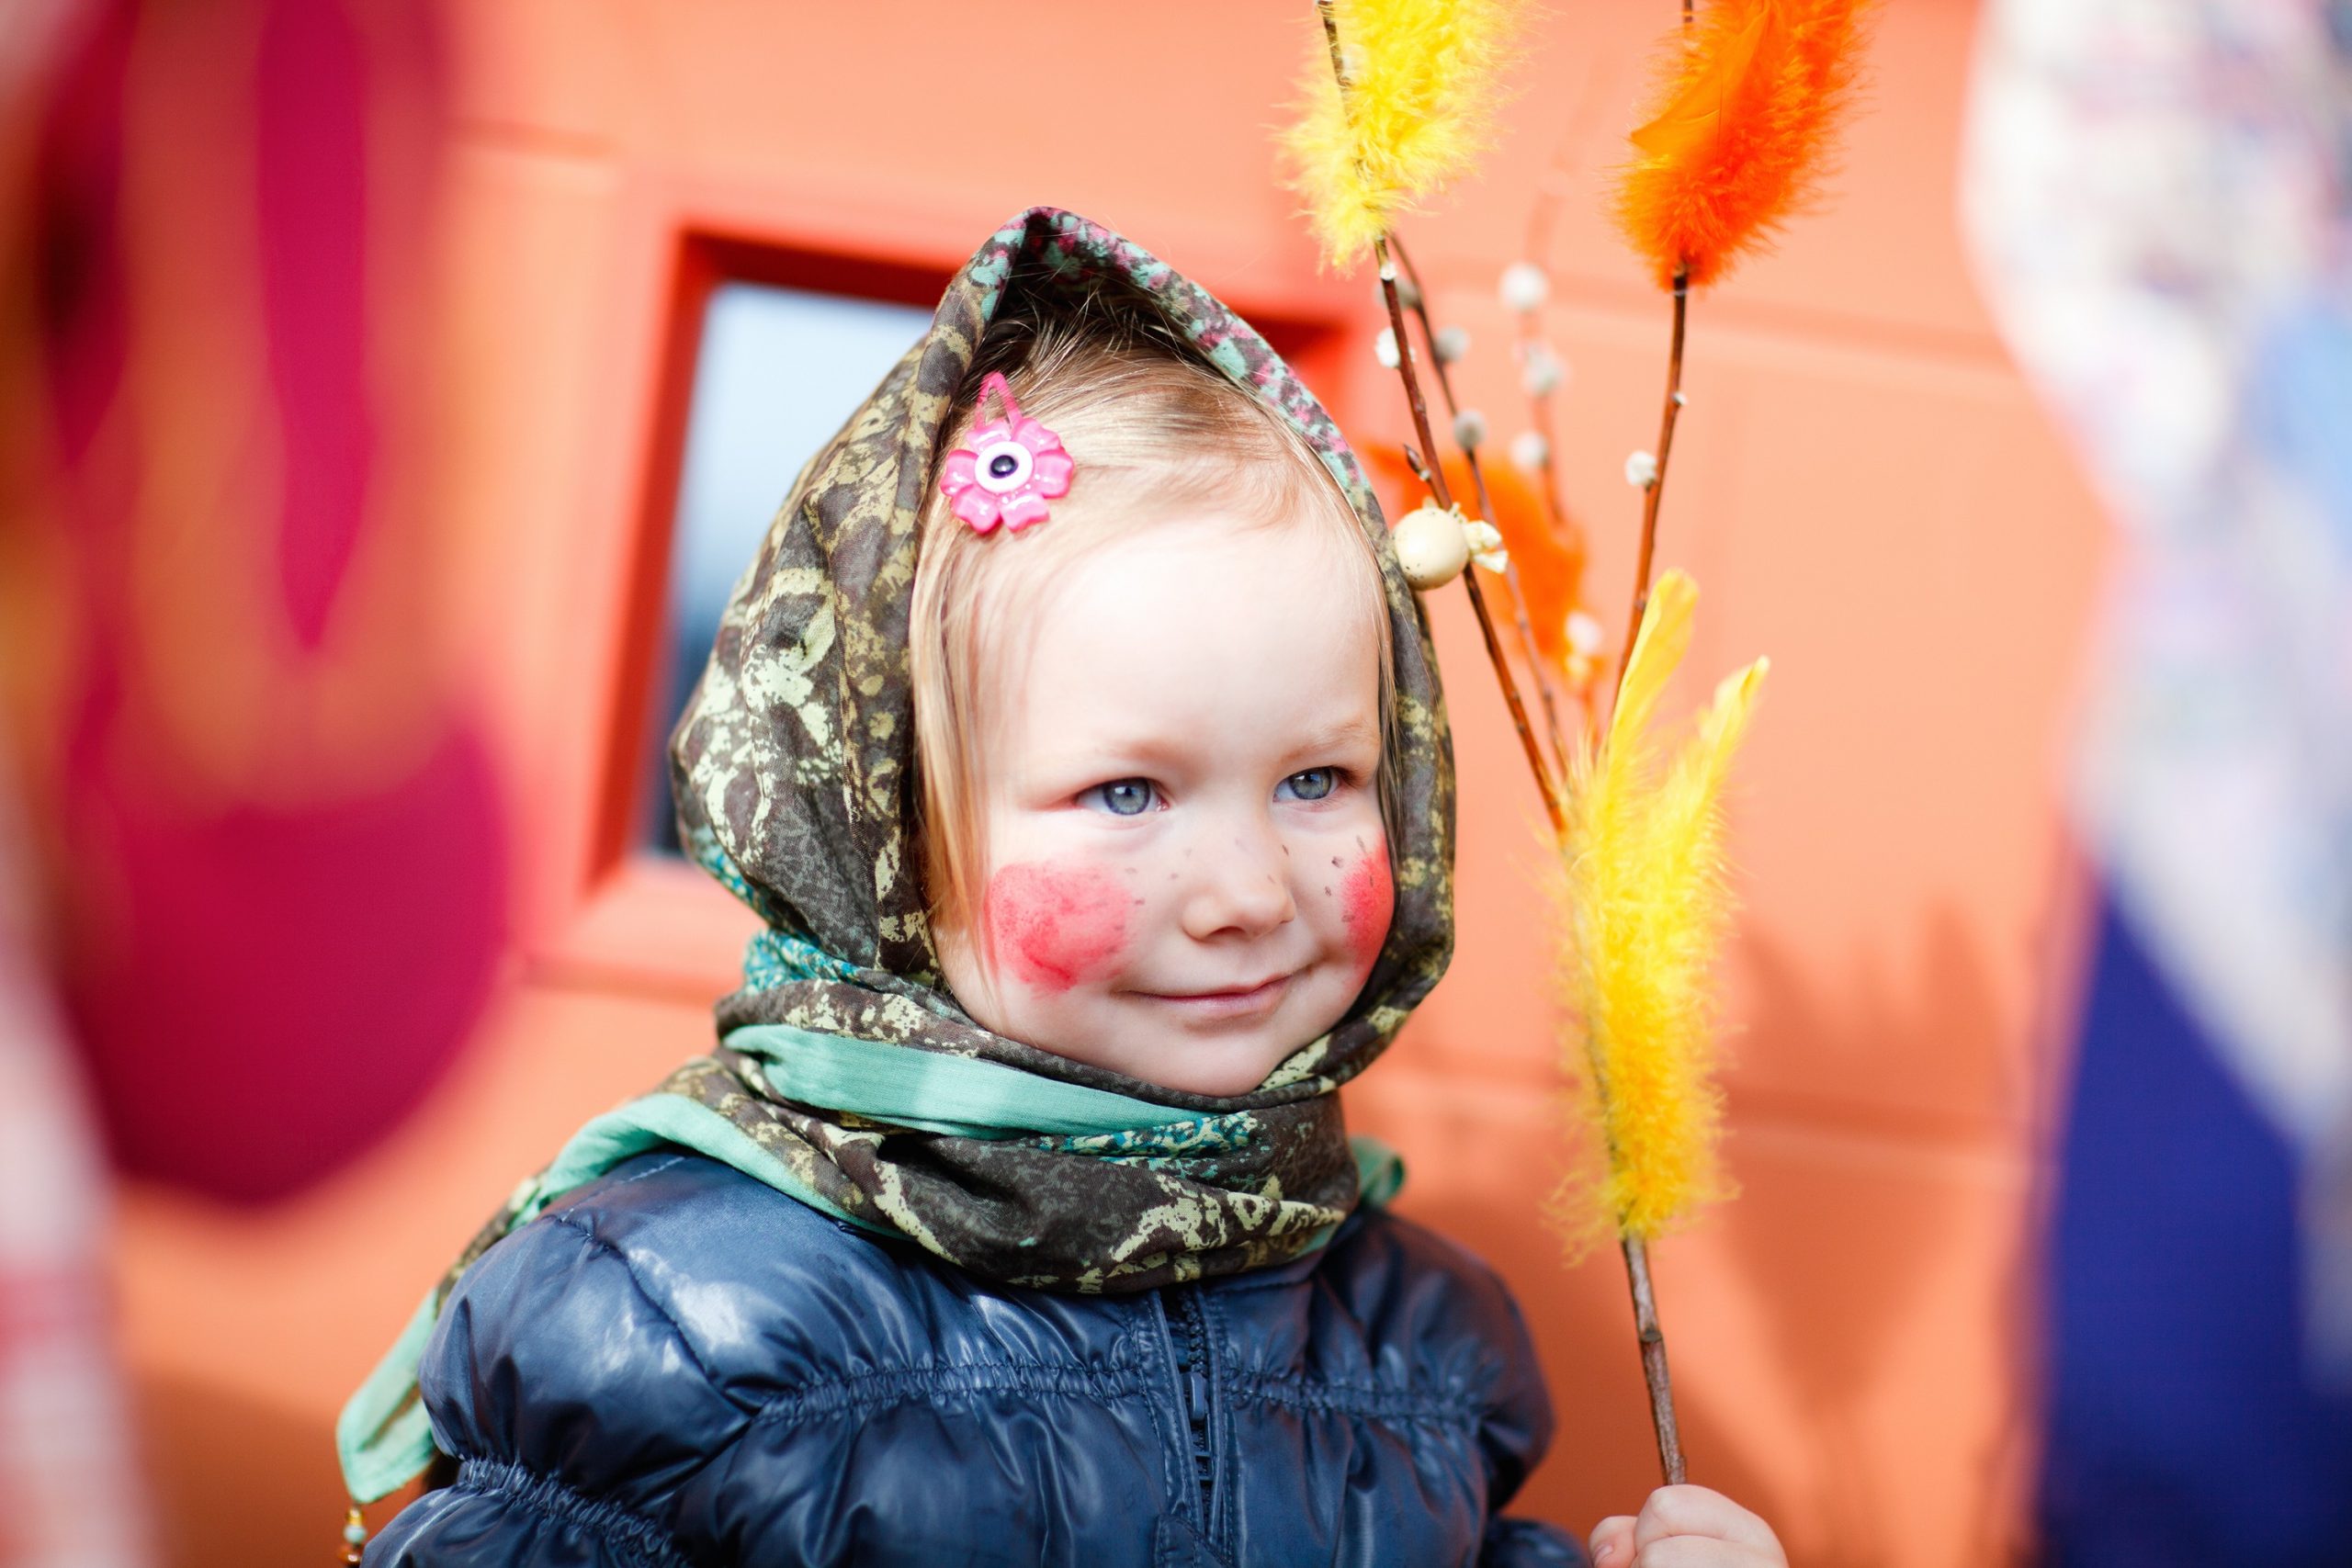 Míg nálunk a fiúk indulnak locsolkodni piros tojások reményében, addig a finneknél a lányok öltöznek boszorkánynak, és kelnek útra. Seprűikkel járják az utcákat, és gyűjtik az édességeket, mint Halloweenkor szokás (Kép: Getty Images)